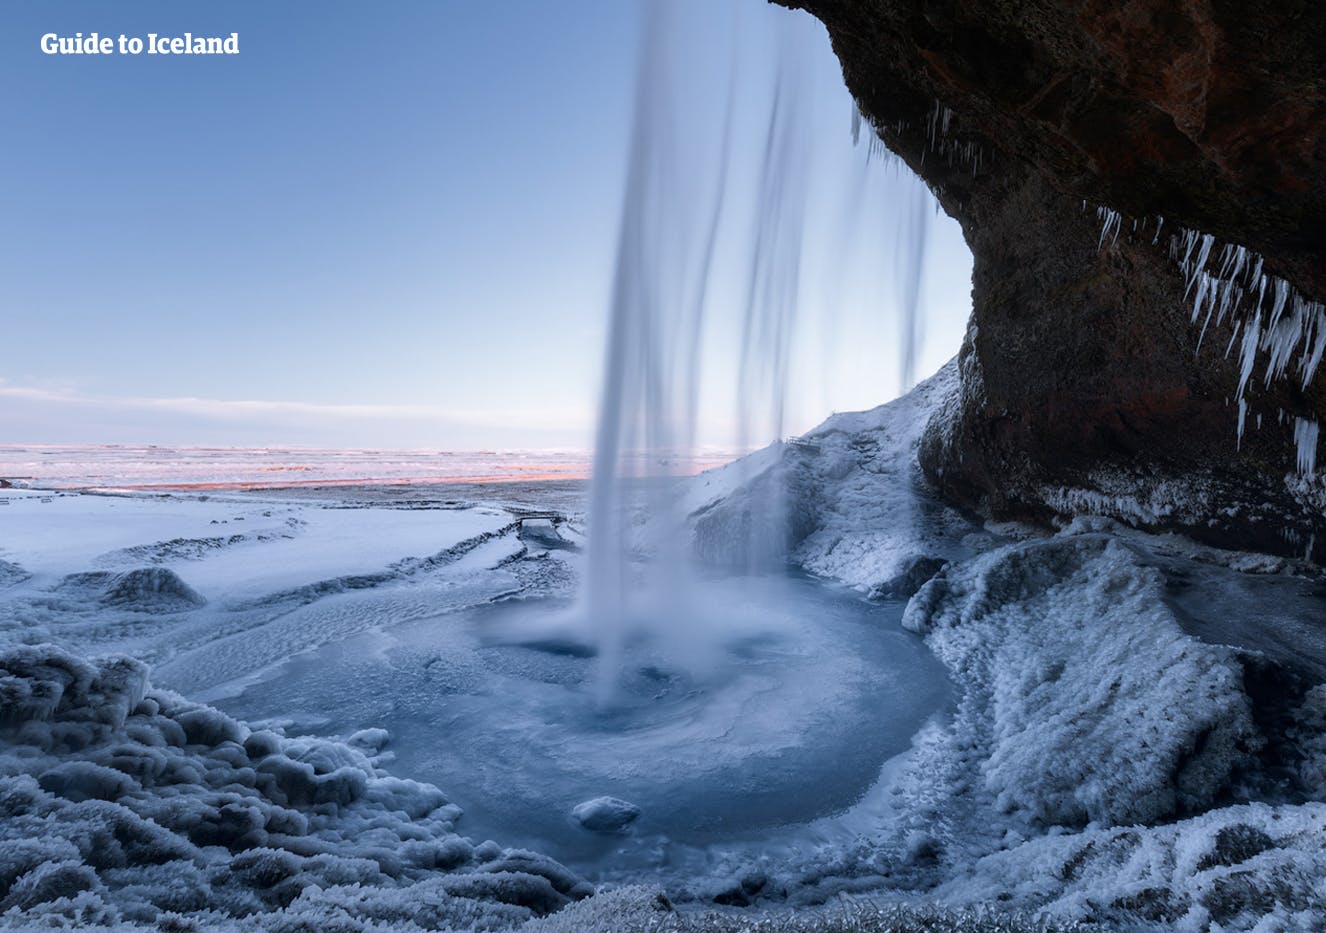 Podziwiaj widoki zza kurtyny spadającej wody, obchodząc wodospad Seljalandsfoss dookoła.